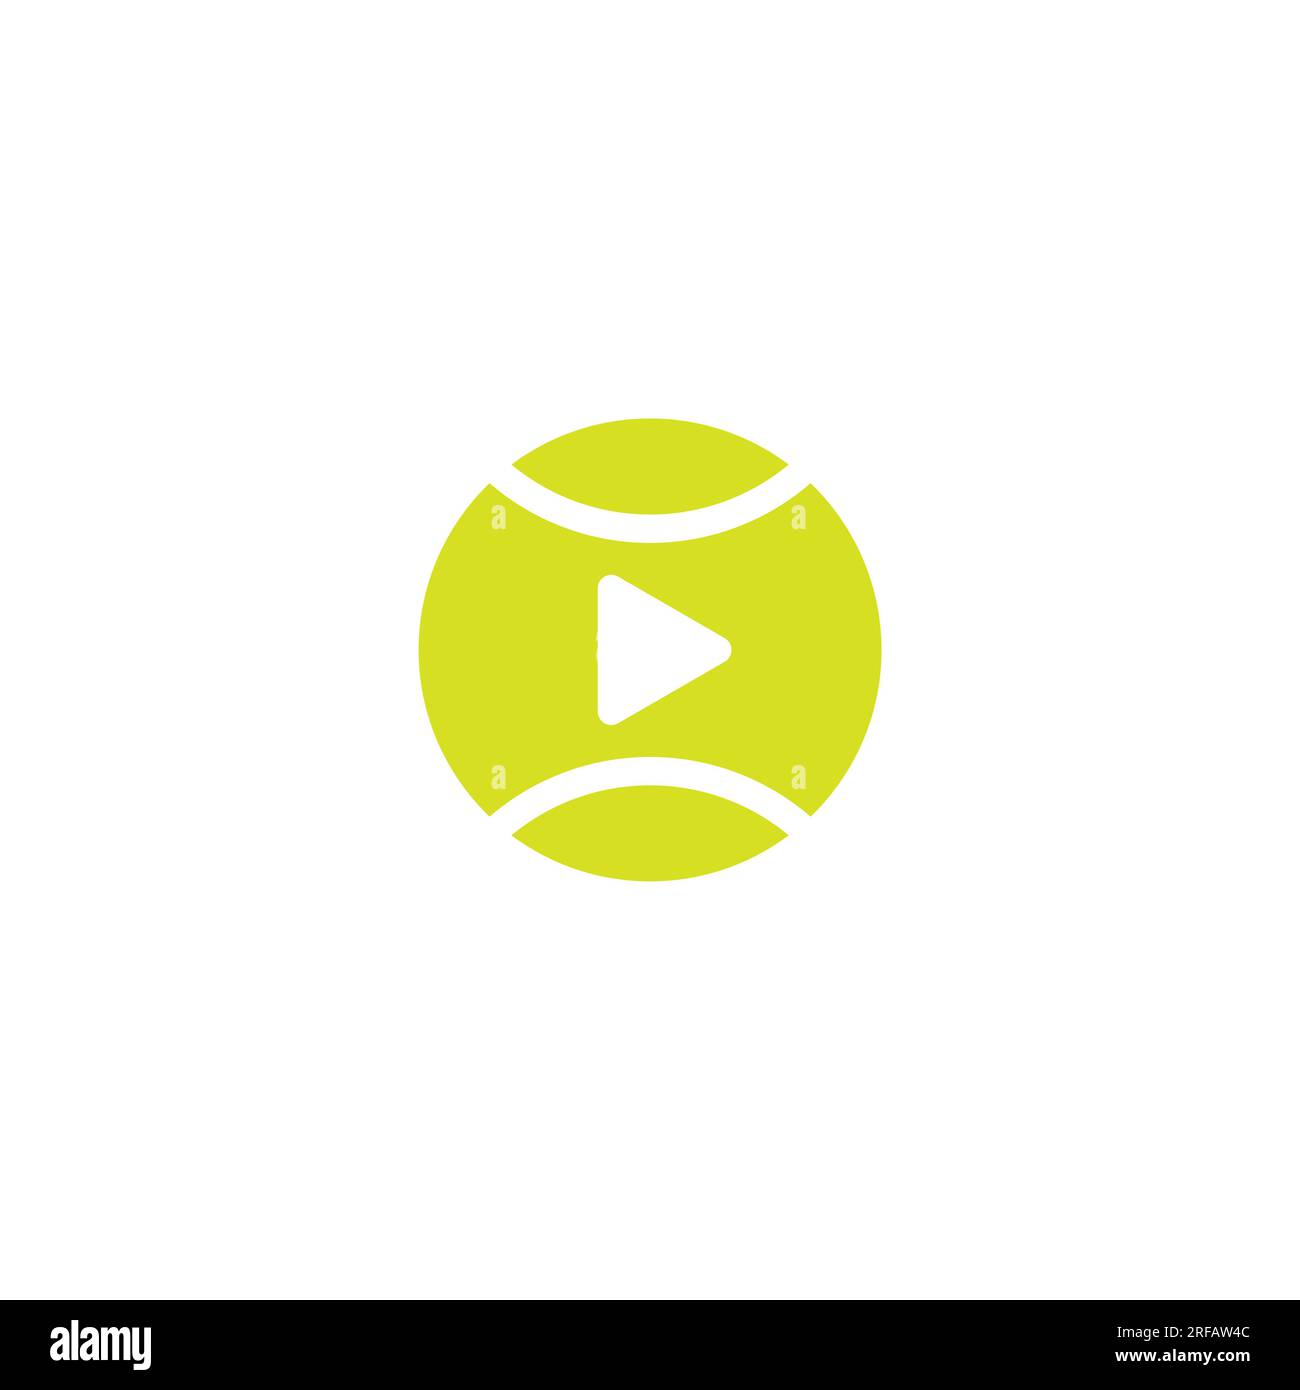 Tennis Ball Video Logo Design. Tennis Club logo Stock Vector